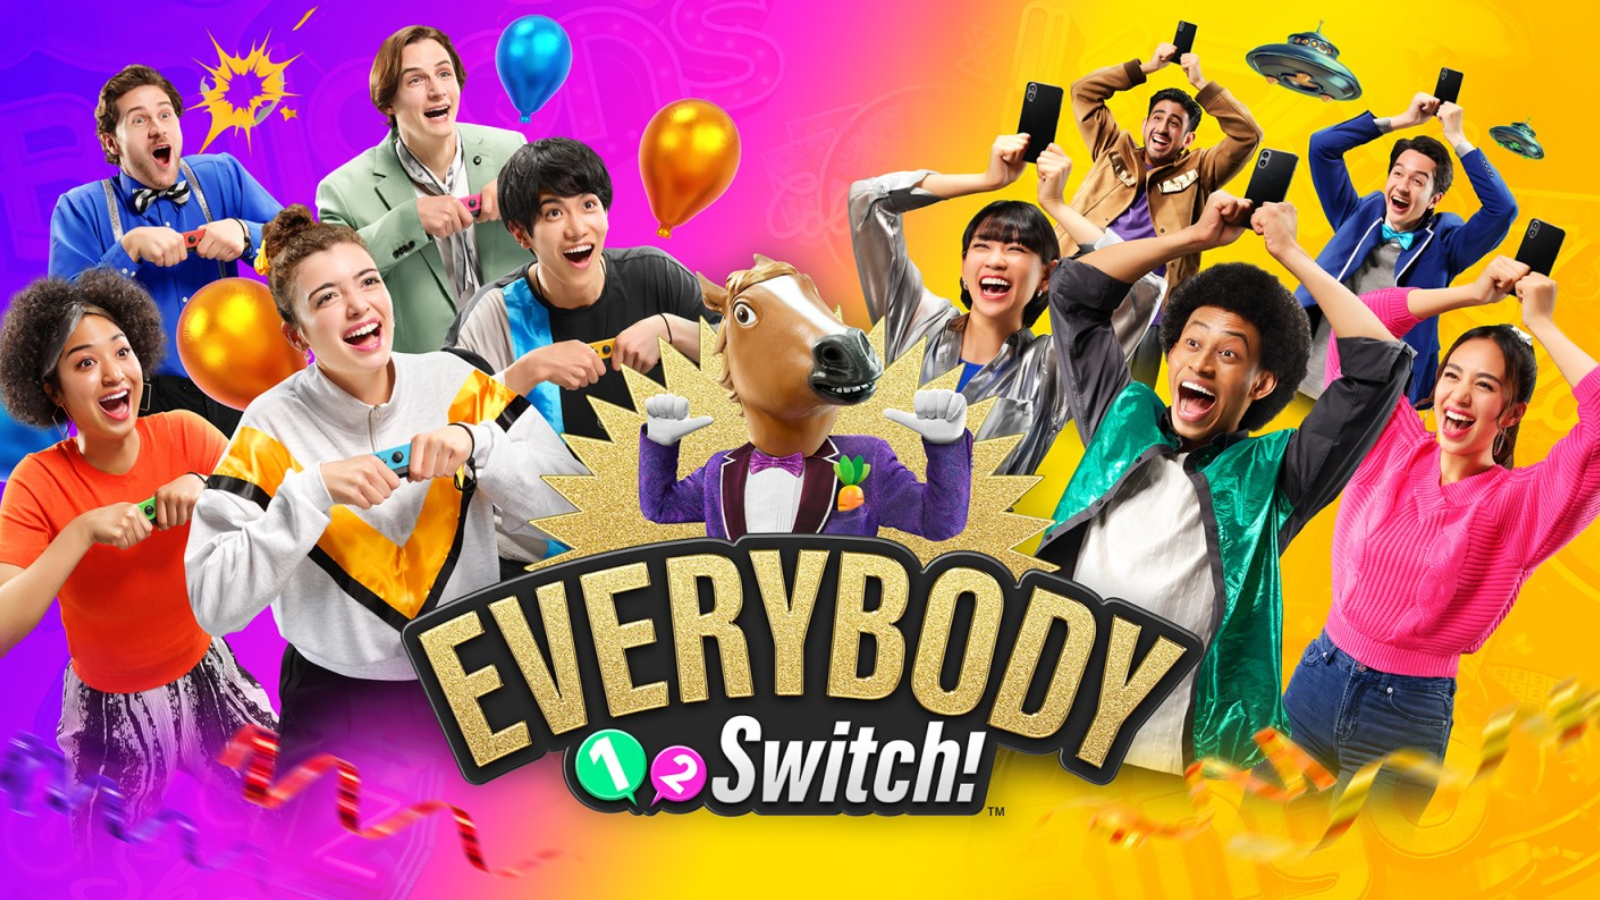 Everybody 1-2 Switch! - Nintendo Switch 